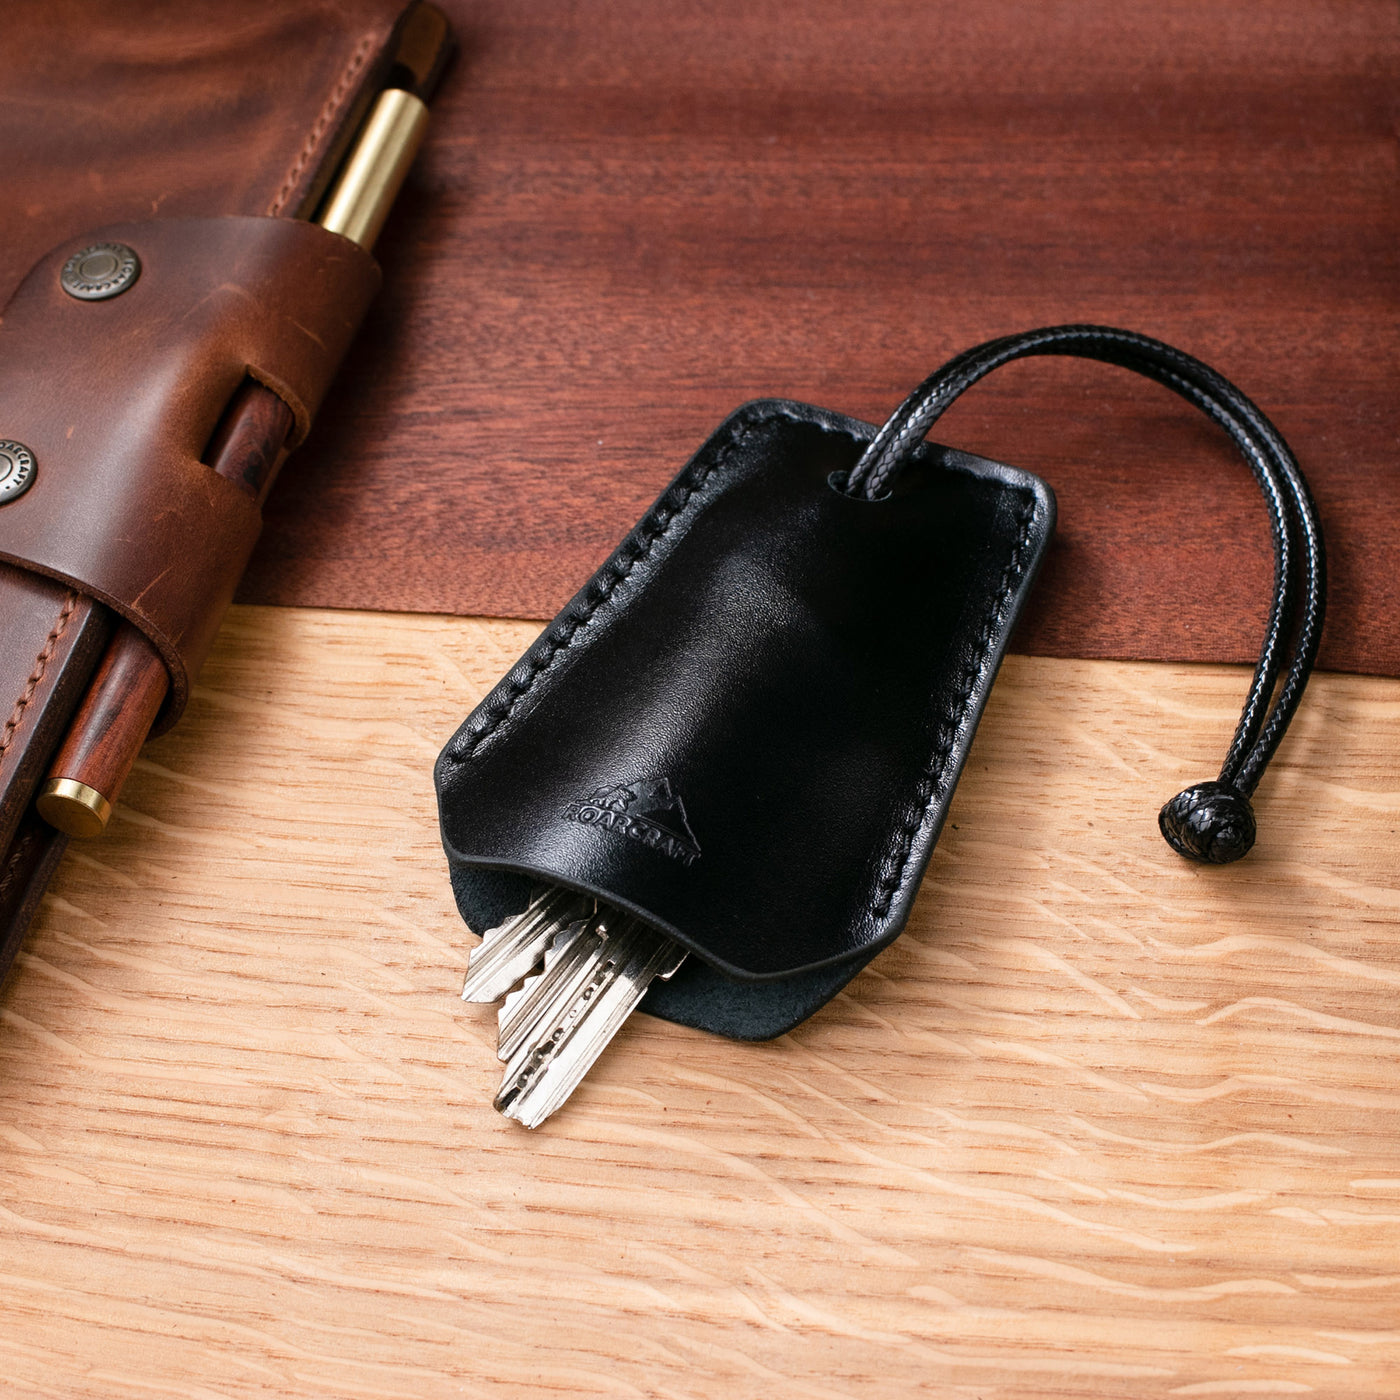 Leather Key Holder Case